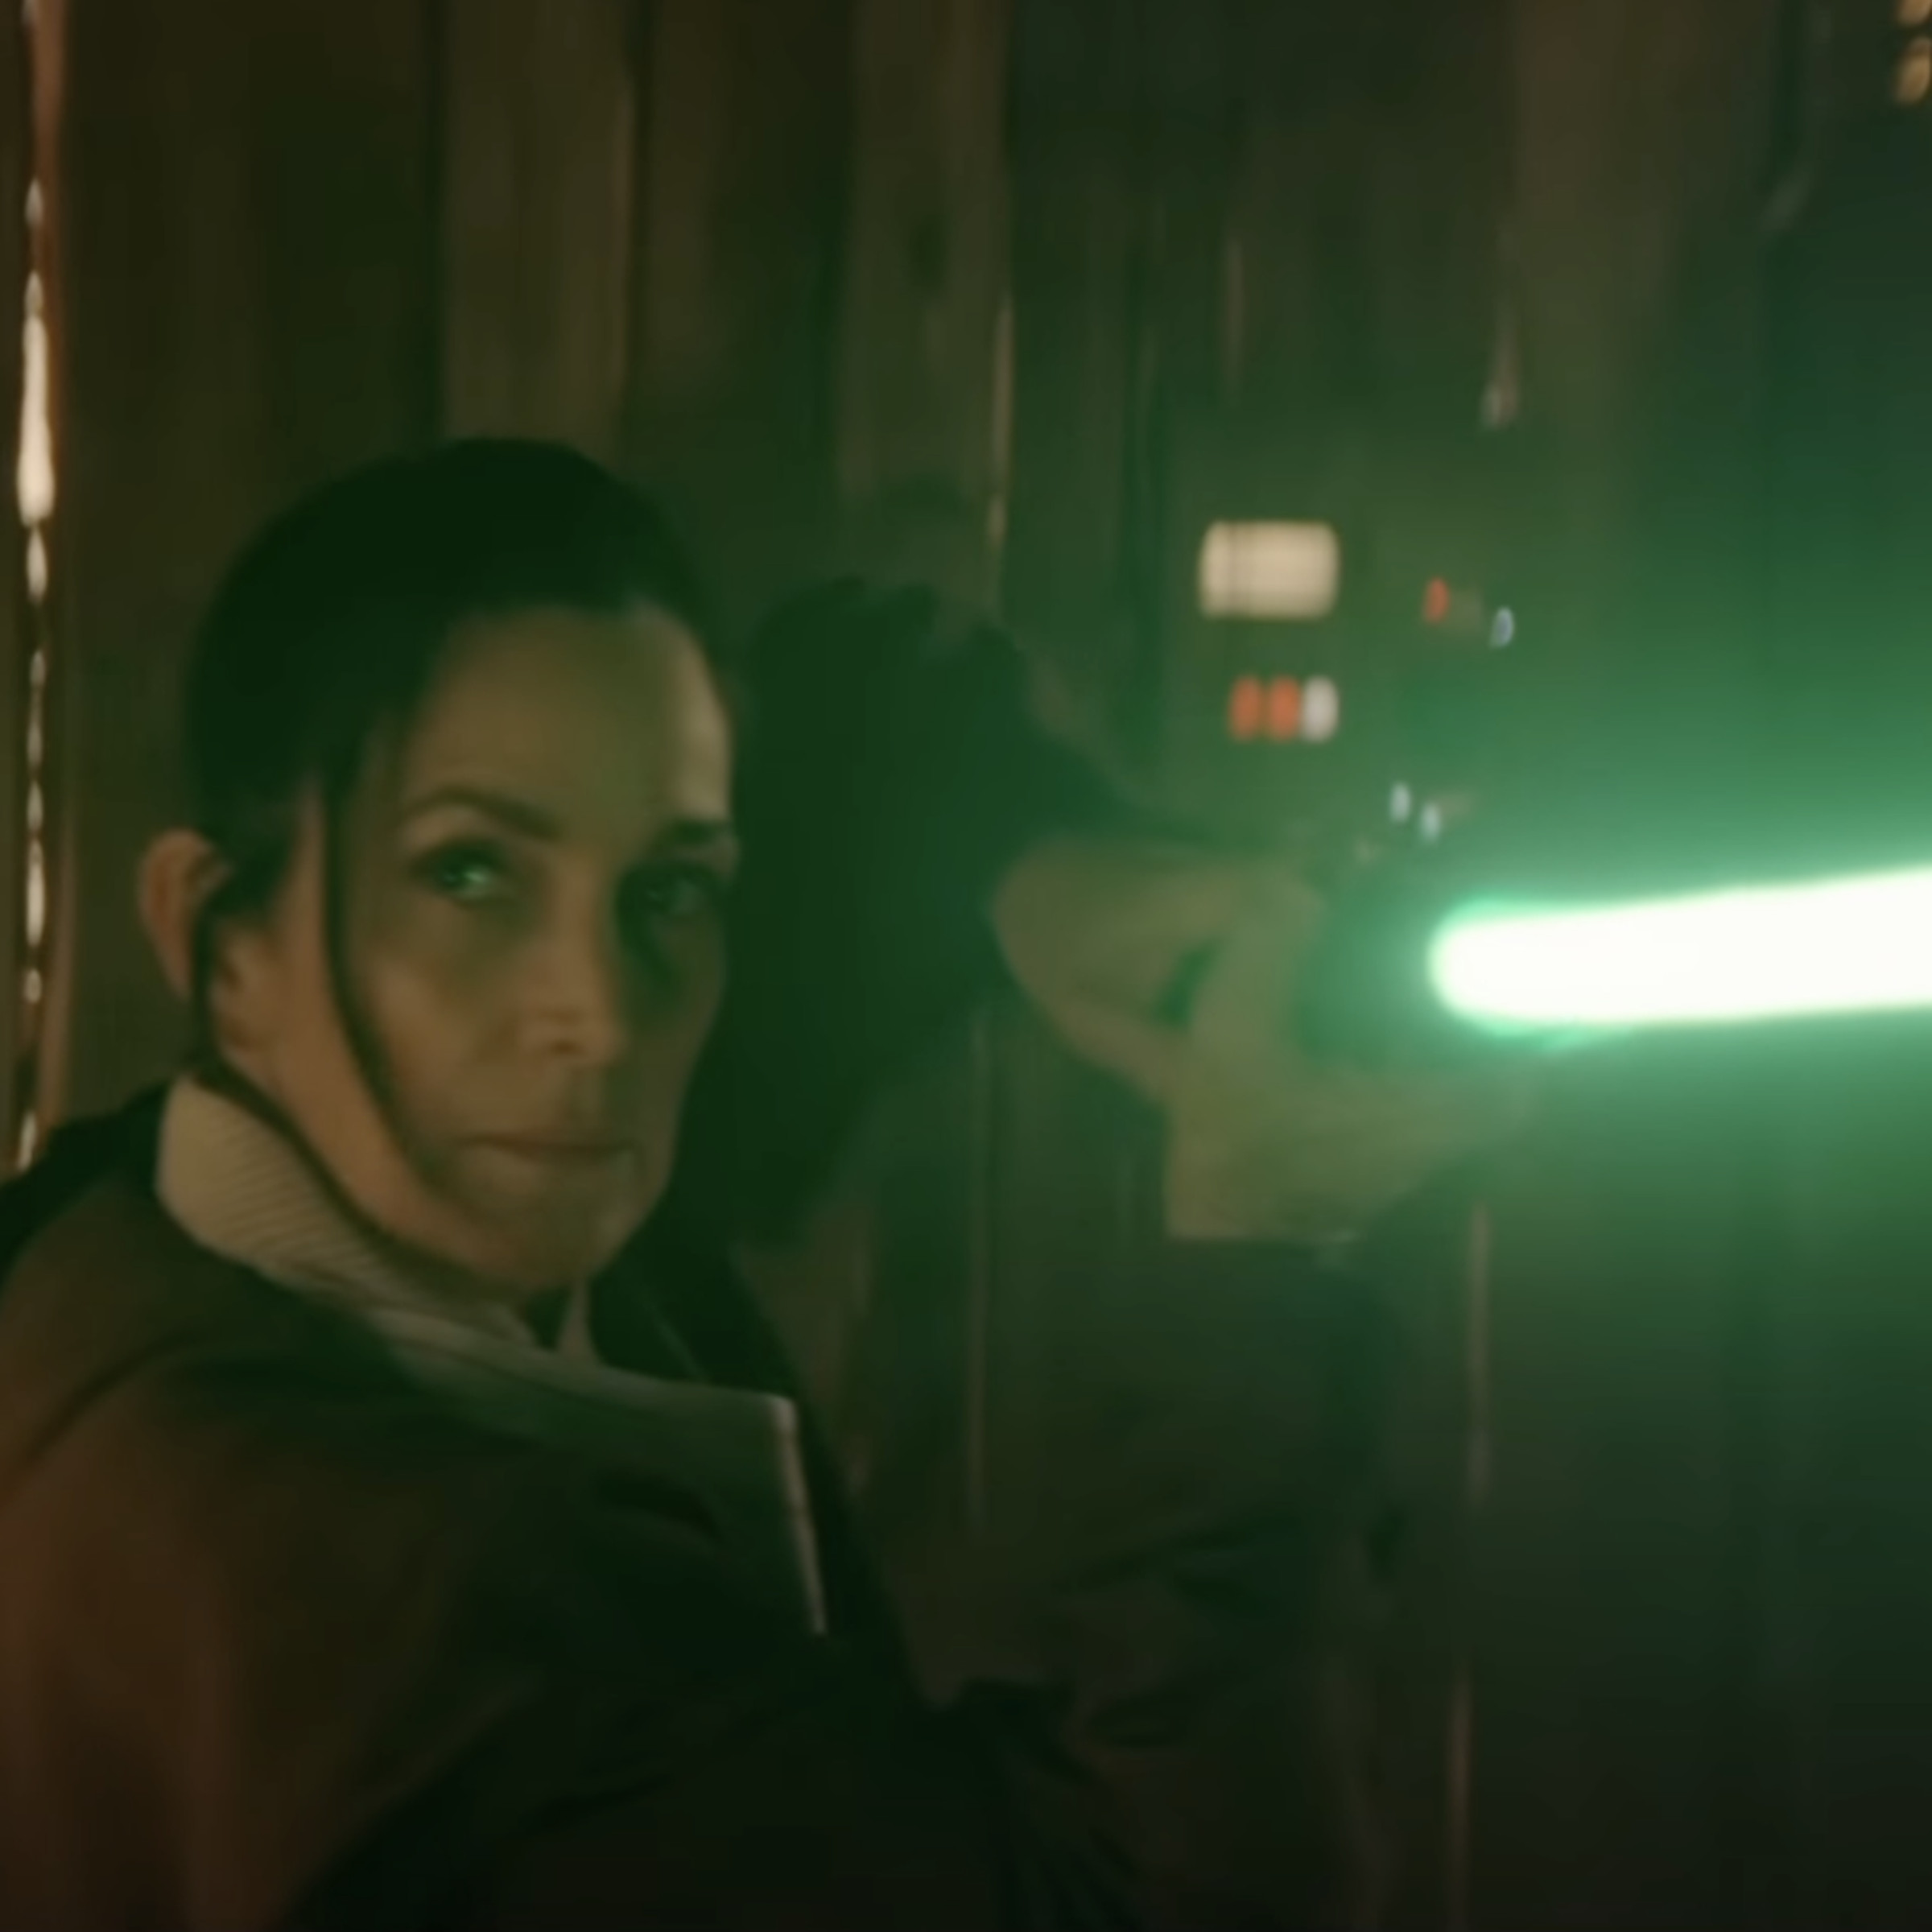 A screenshot showing Carrie-Anne Moss’s character wielding a green lightsaber.